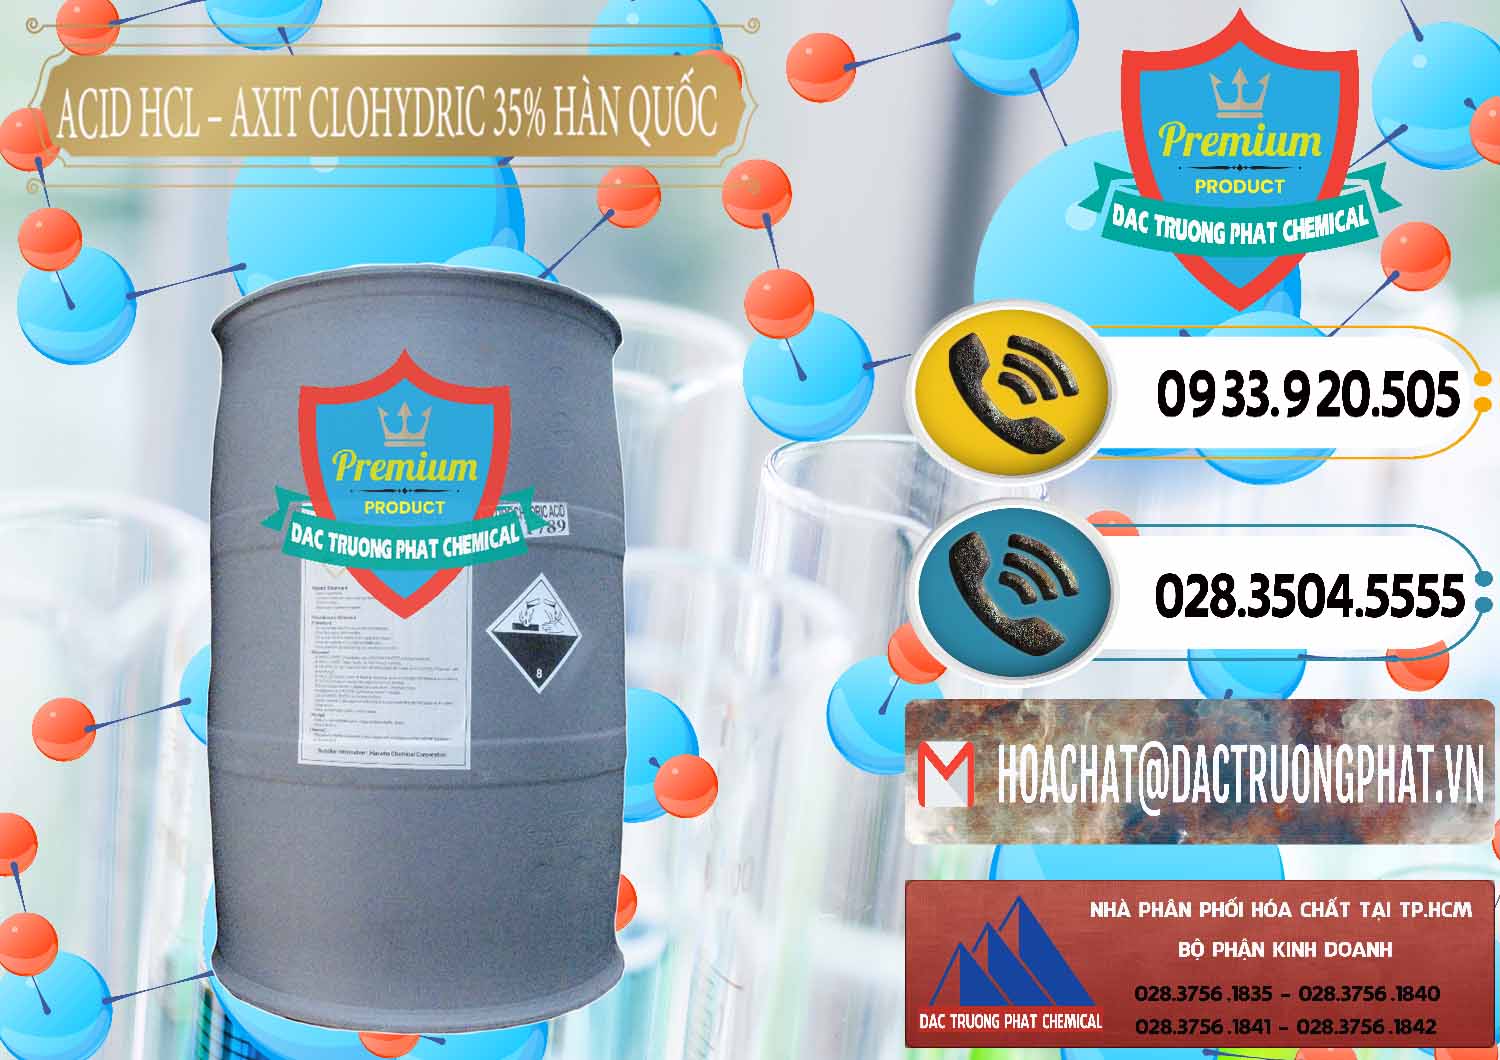 Cty kinh doanh và bán Acid HCL - Axit Cohidric 35% Hàn Quốc Korea - 0011 - Chuyên kinh doanh ( phân phối ) hóa chất tại TP.HCM - hoachatdetnhuom.vn